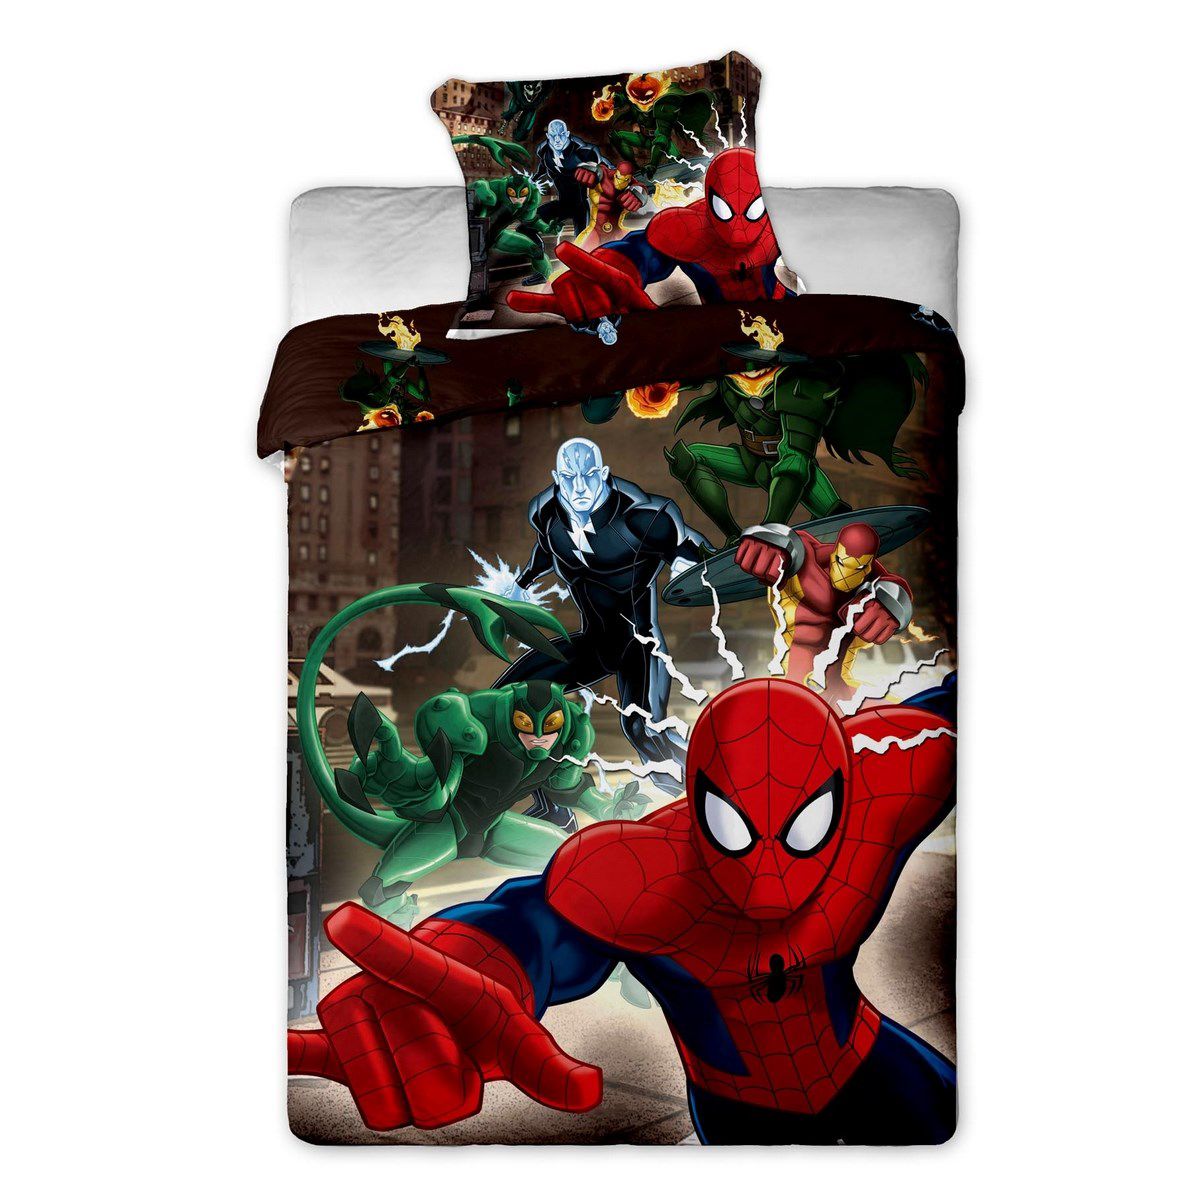 Jerry Fabrics povlečení bavlna Spiderman brown 140x200+70x90 cm  - 4home.cz